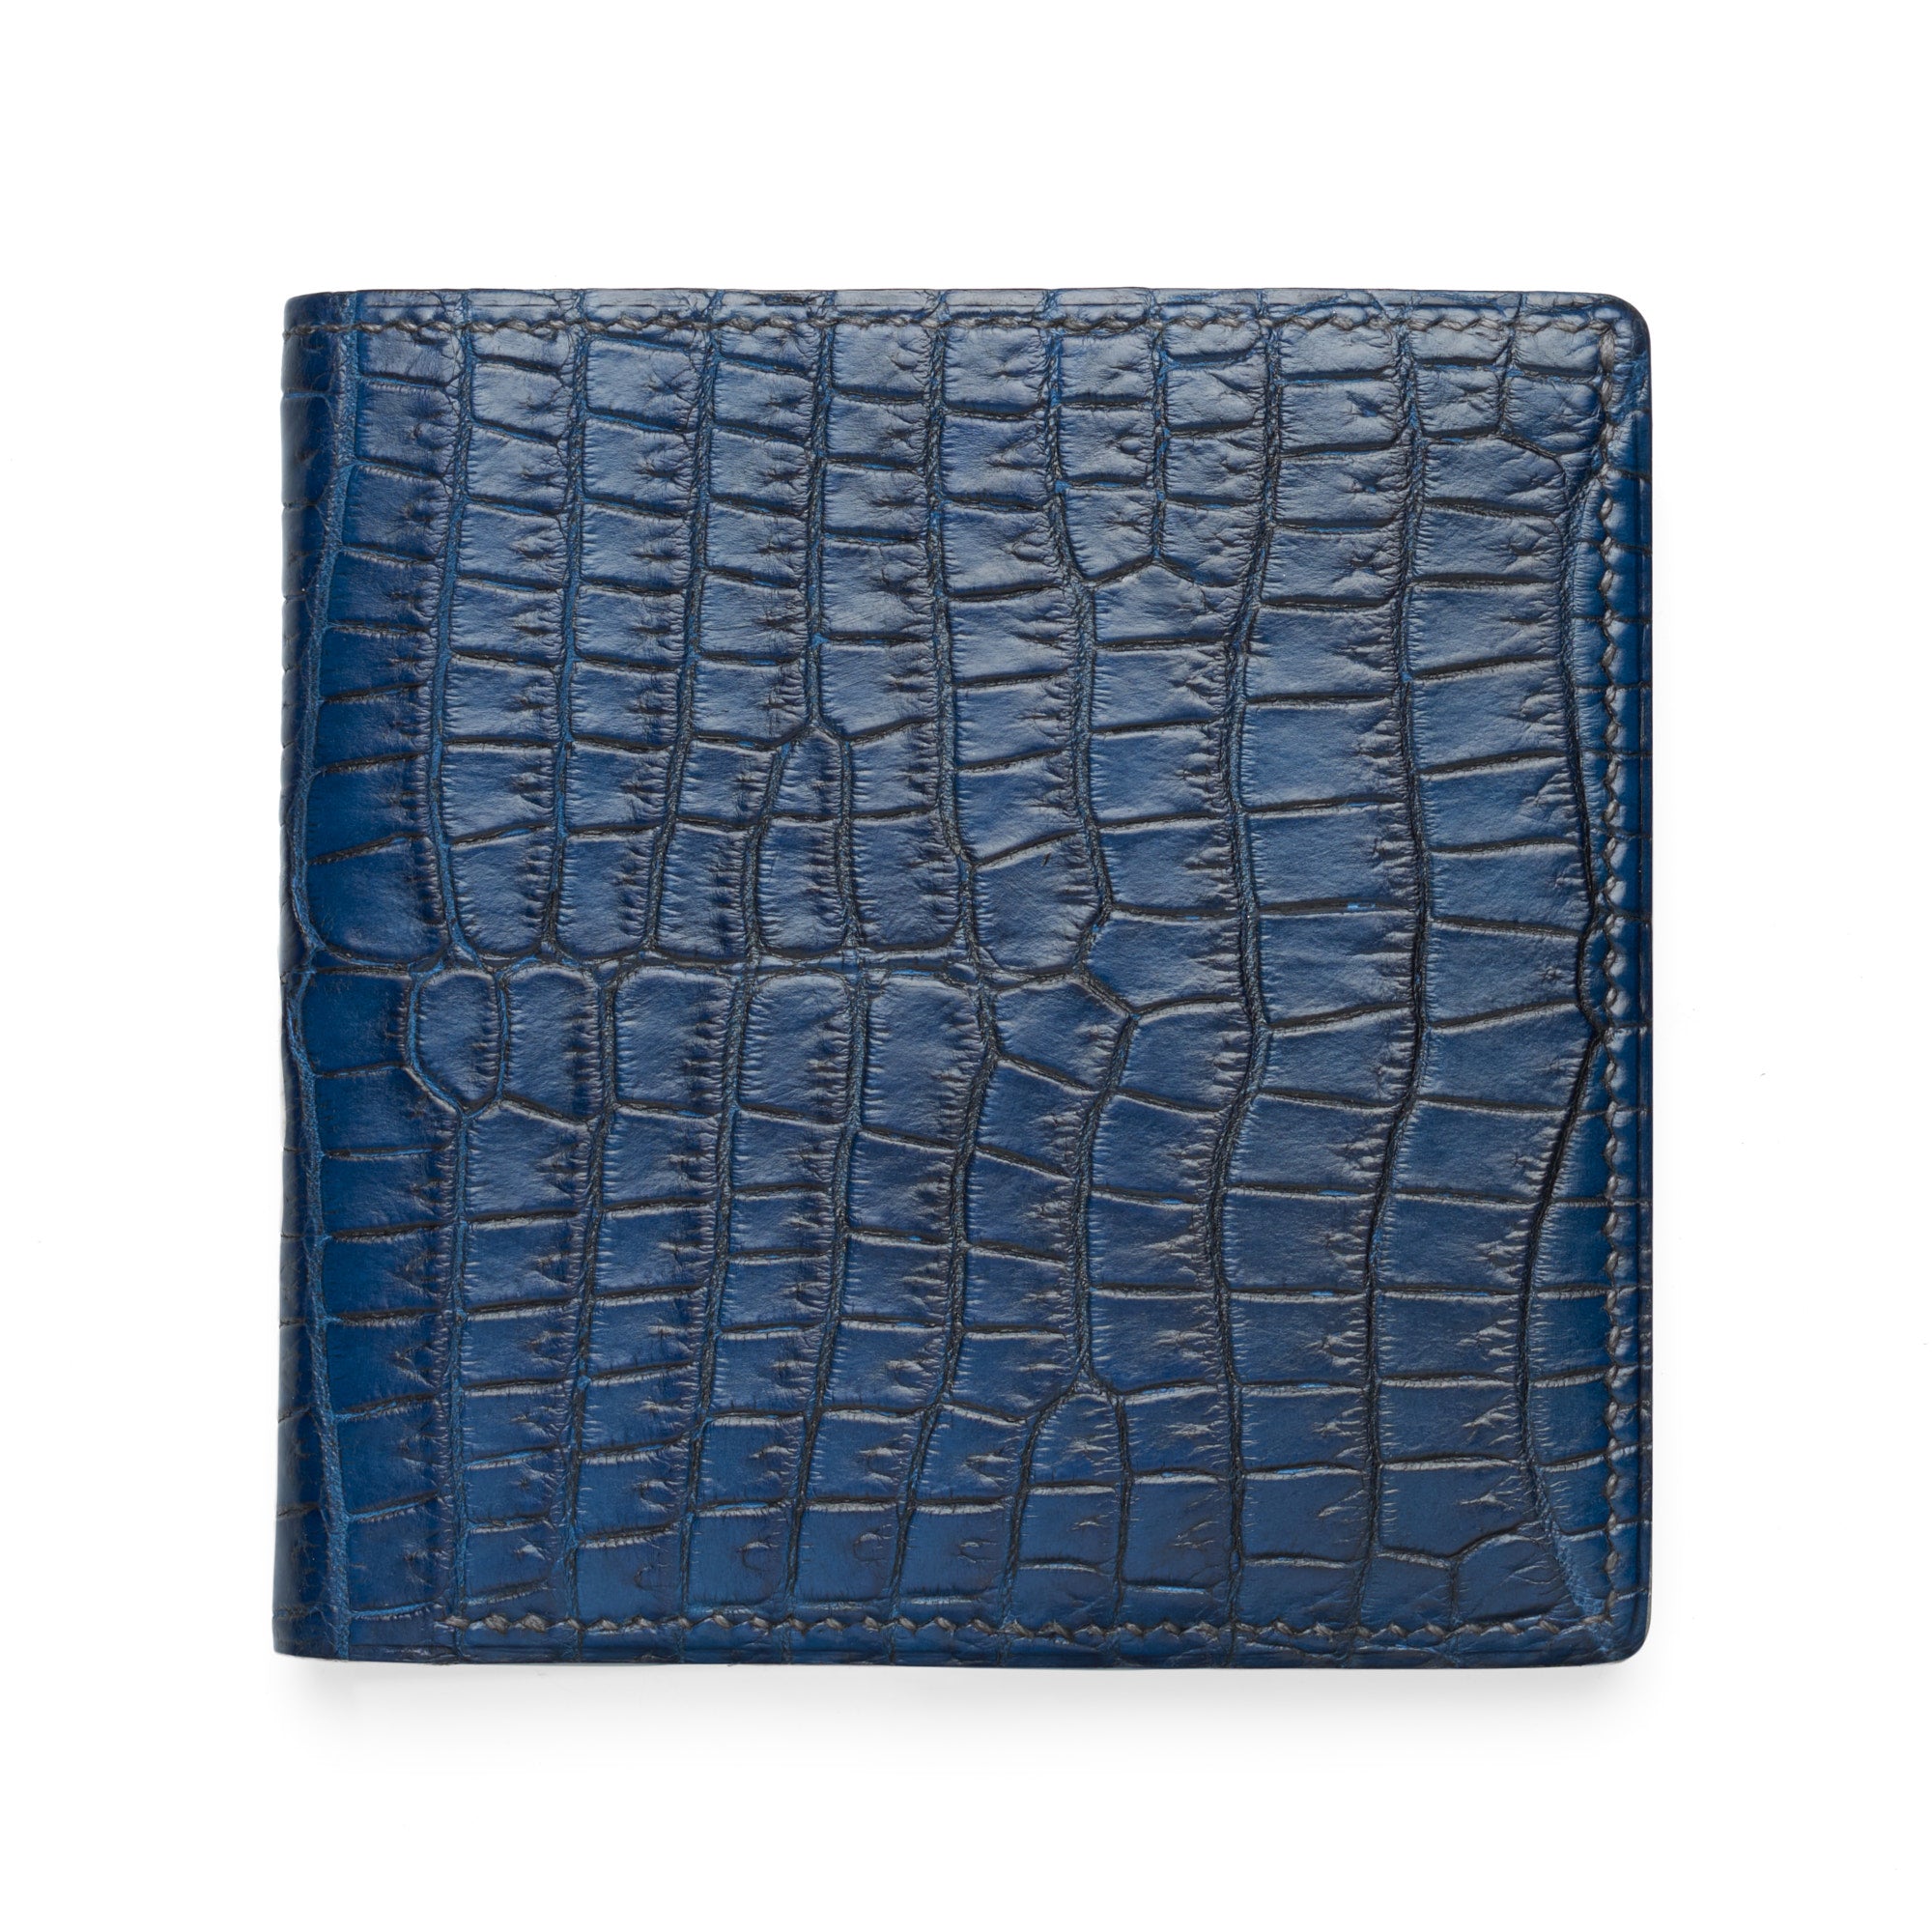 VIA LA MODA Cognac Genuine Nile Crocodile Leather Birkin 35 Style Handbag